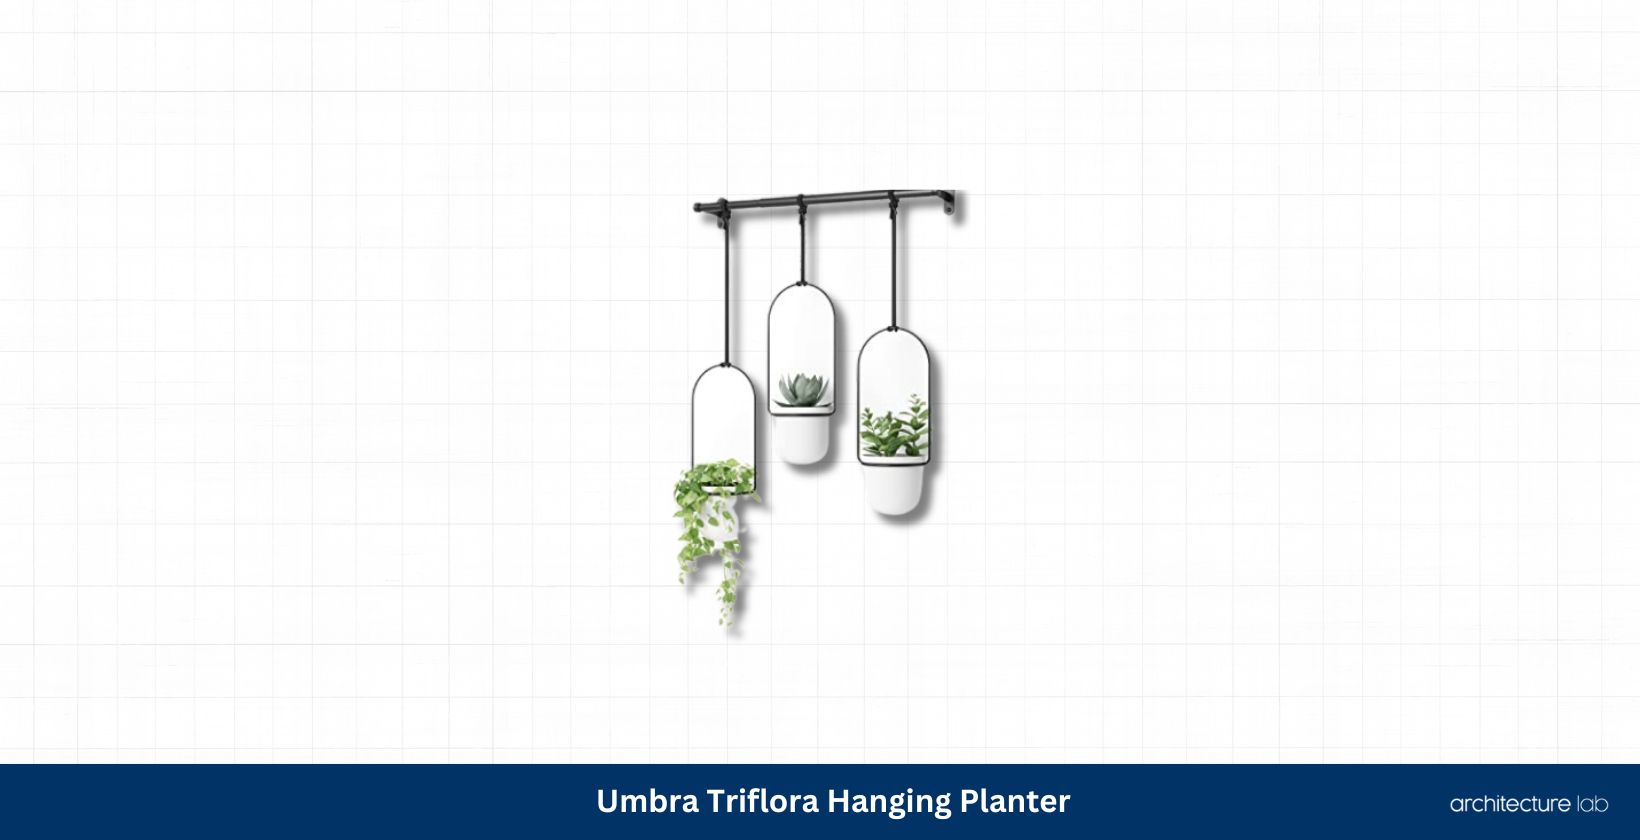 Umbra triflora hanging planter